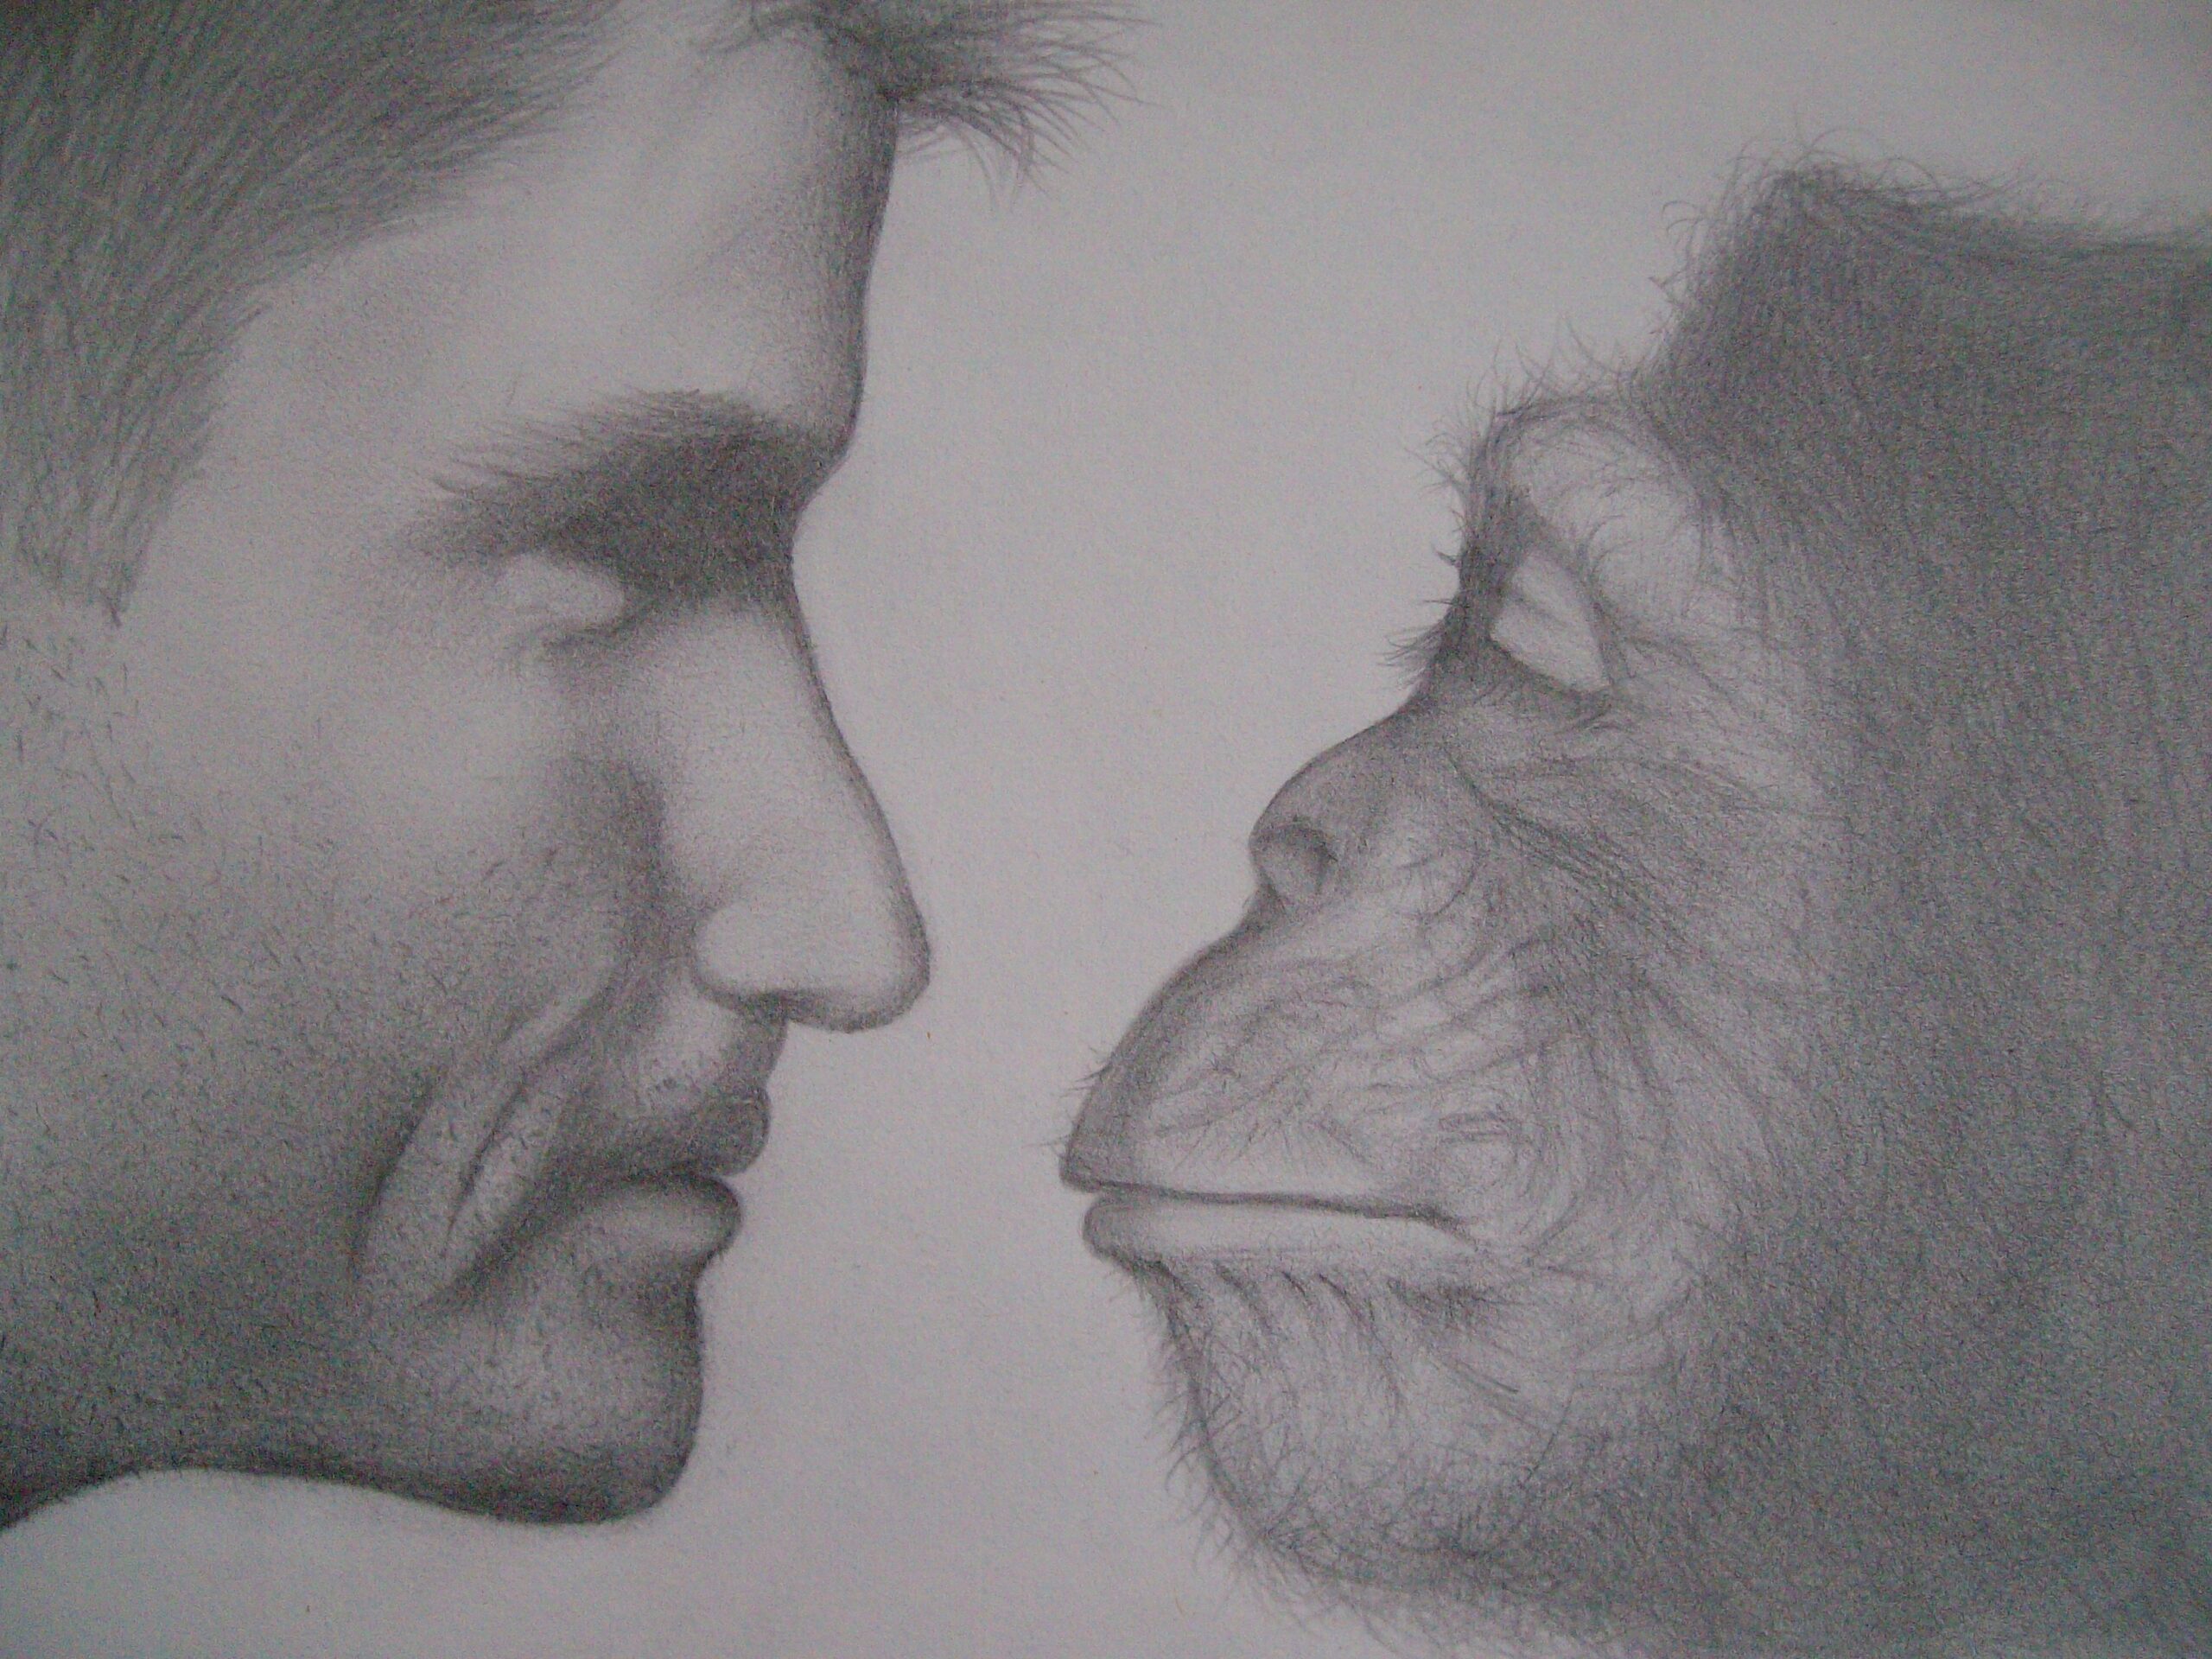 Человек против обезьяны, автор: extraordinary632 Scaled